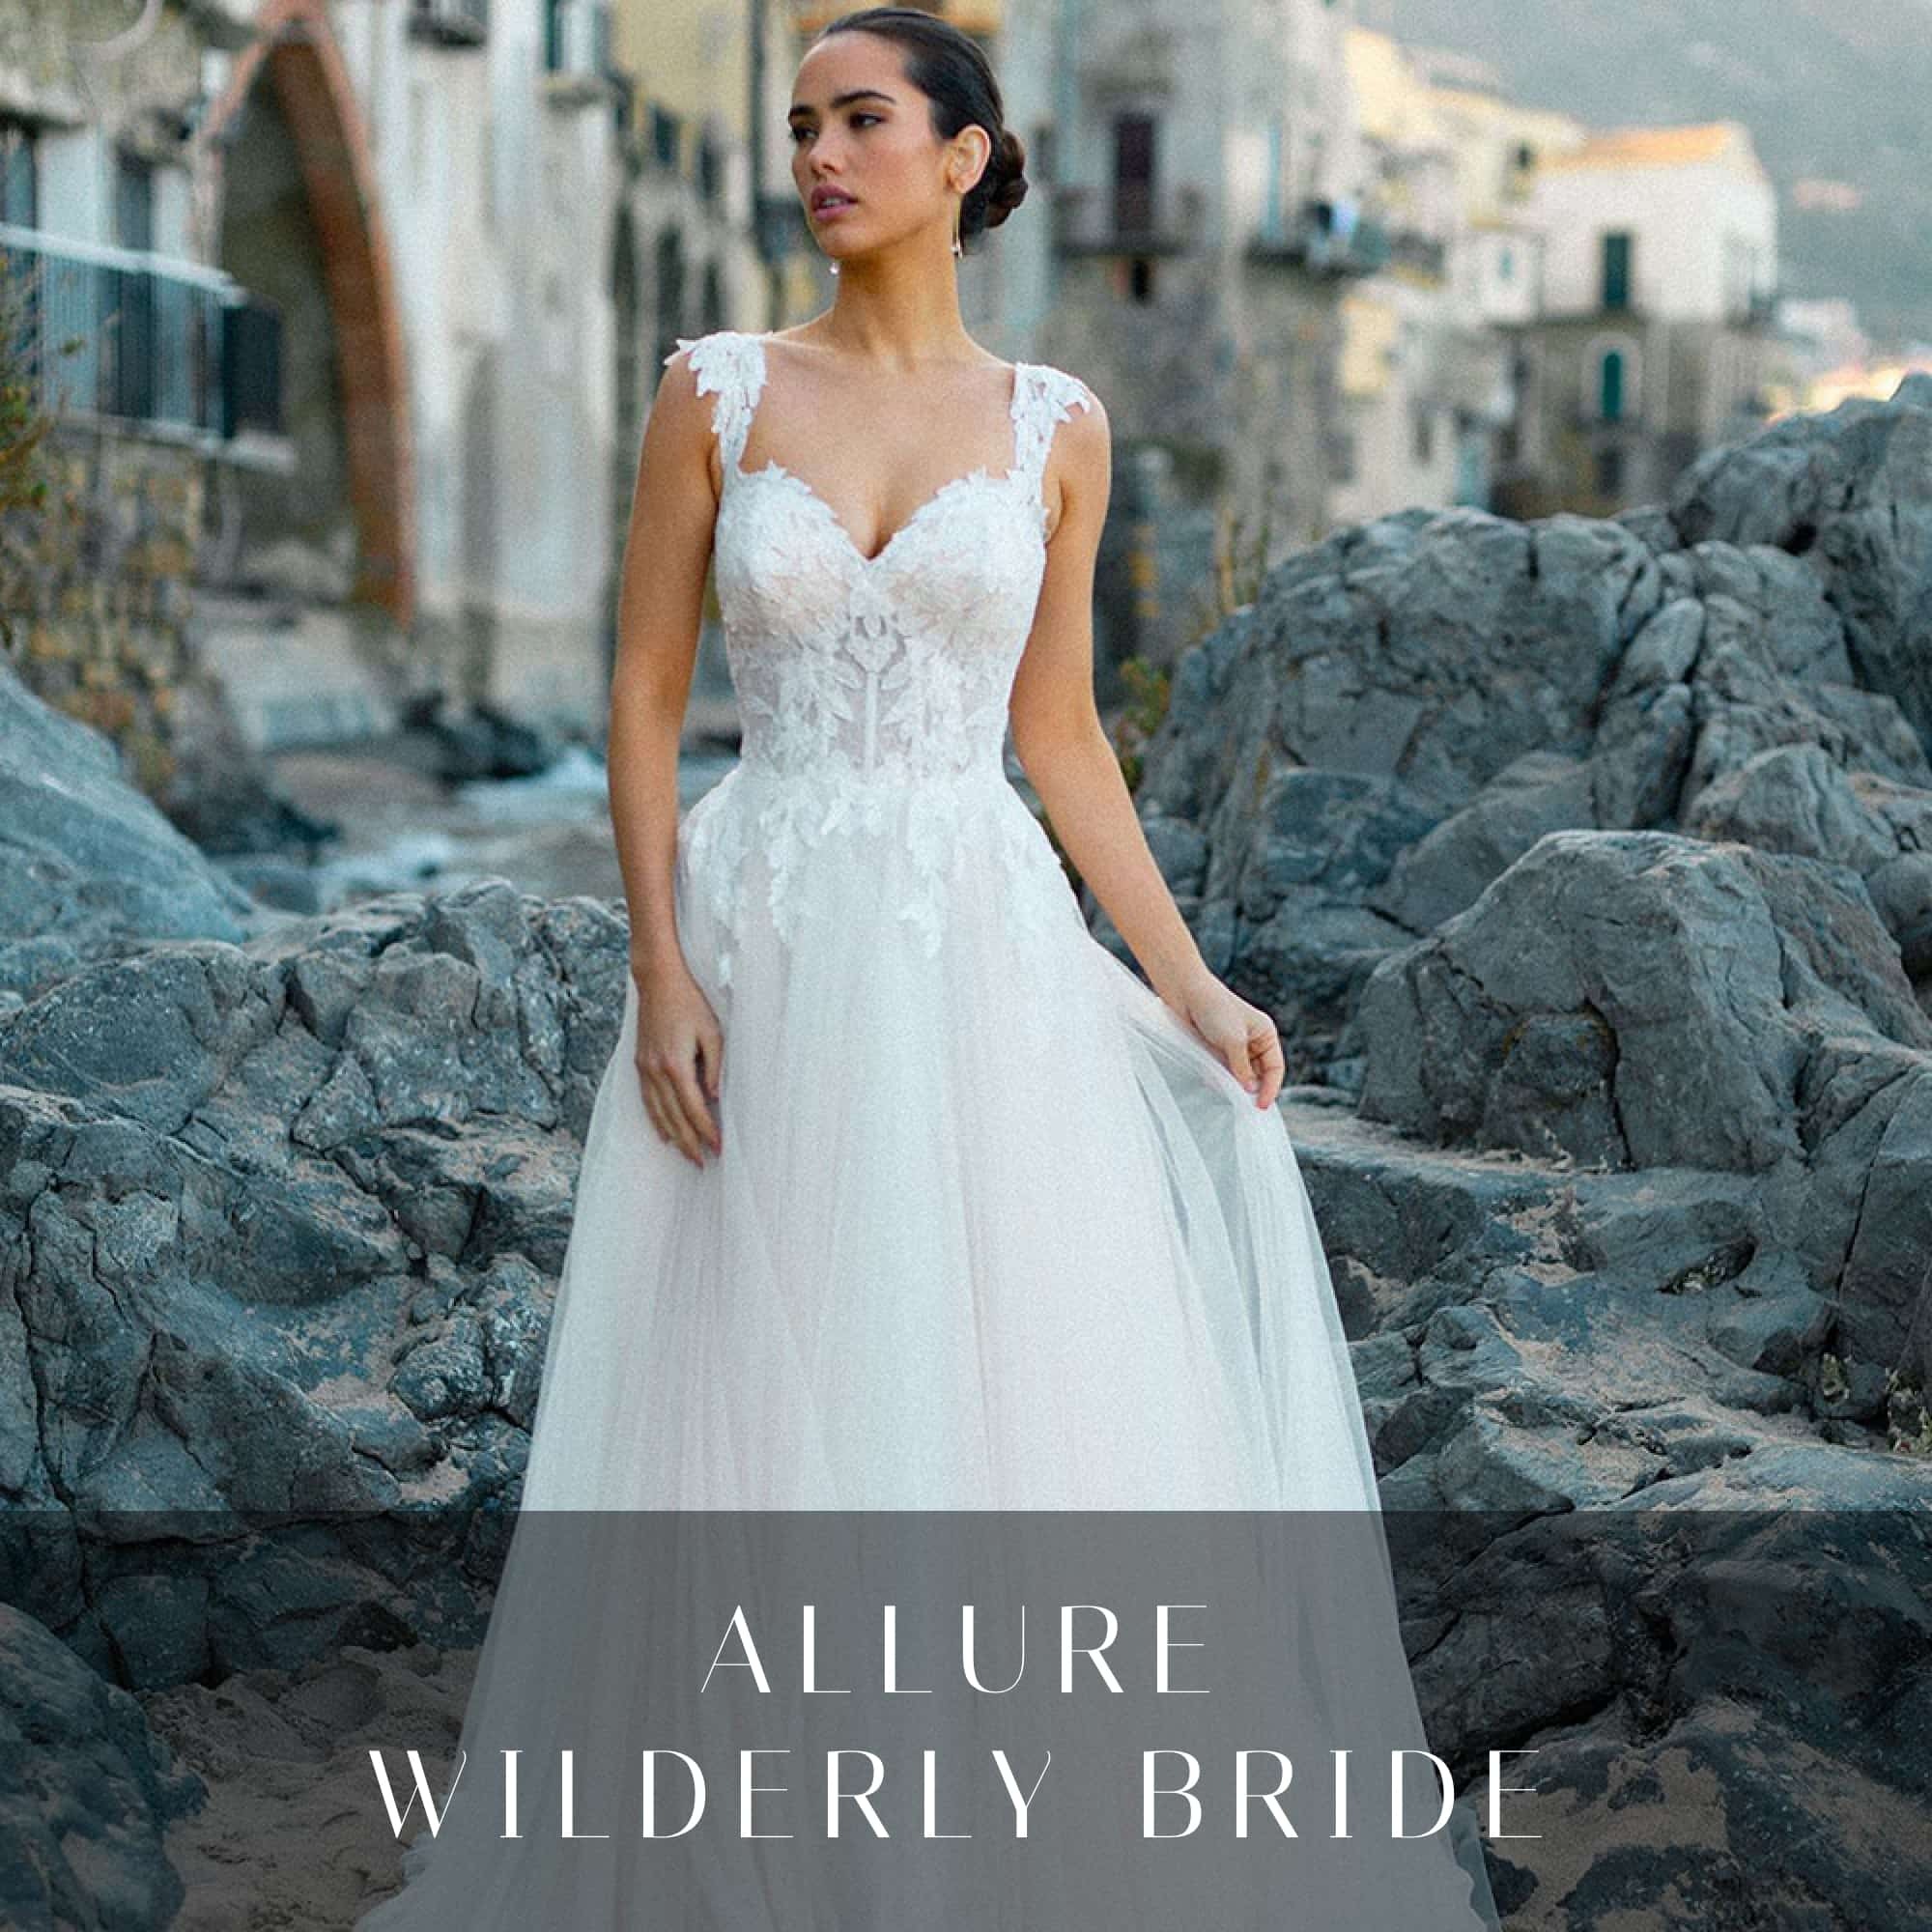 Allure Wilderly Bride Wedding Dresses